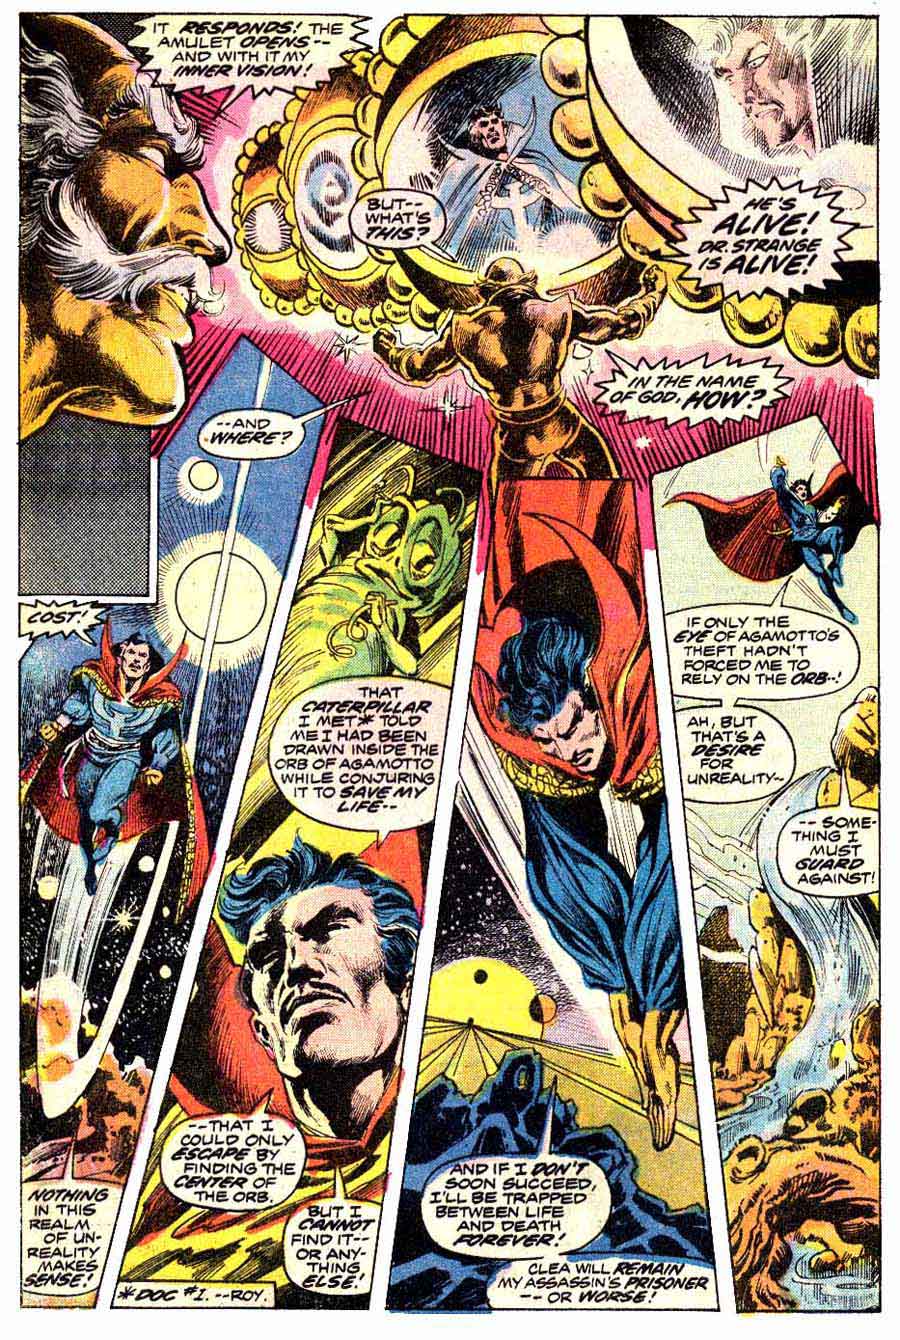 Frank Brunner  bronze age 1970s marvel comic book page art - Doctor Strange v2 #2